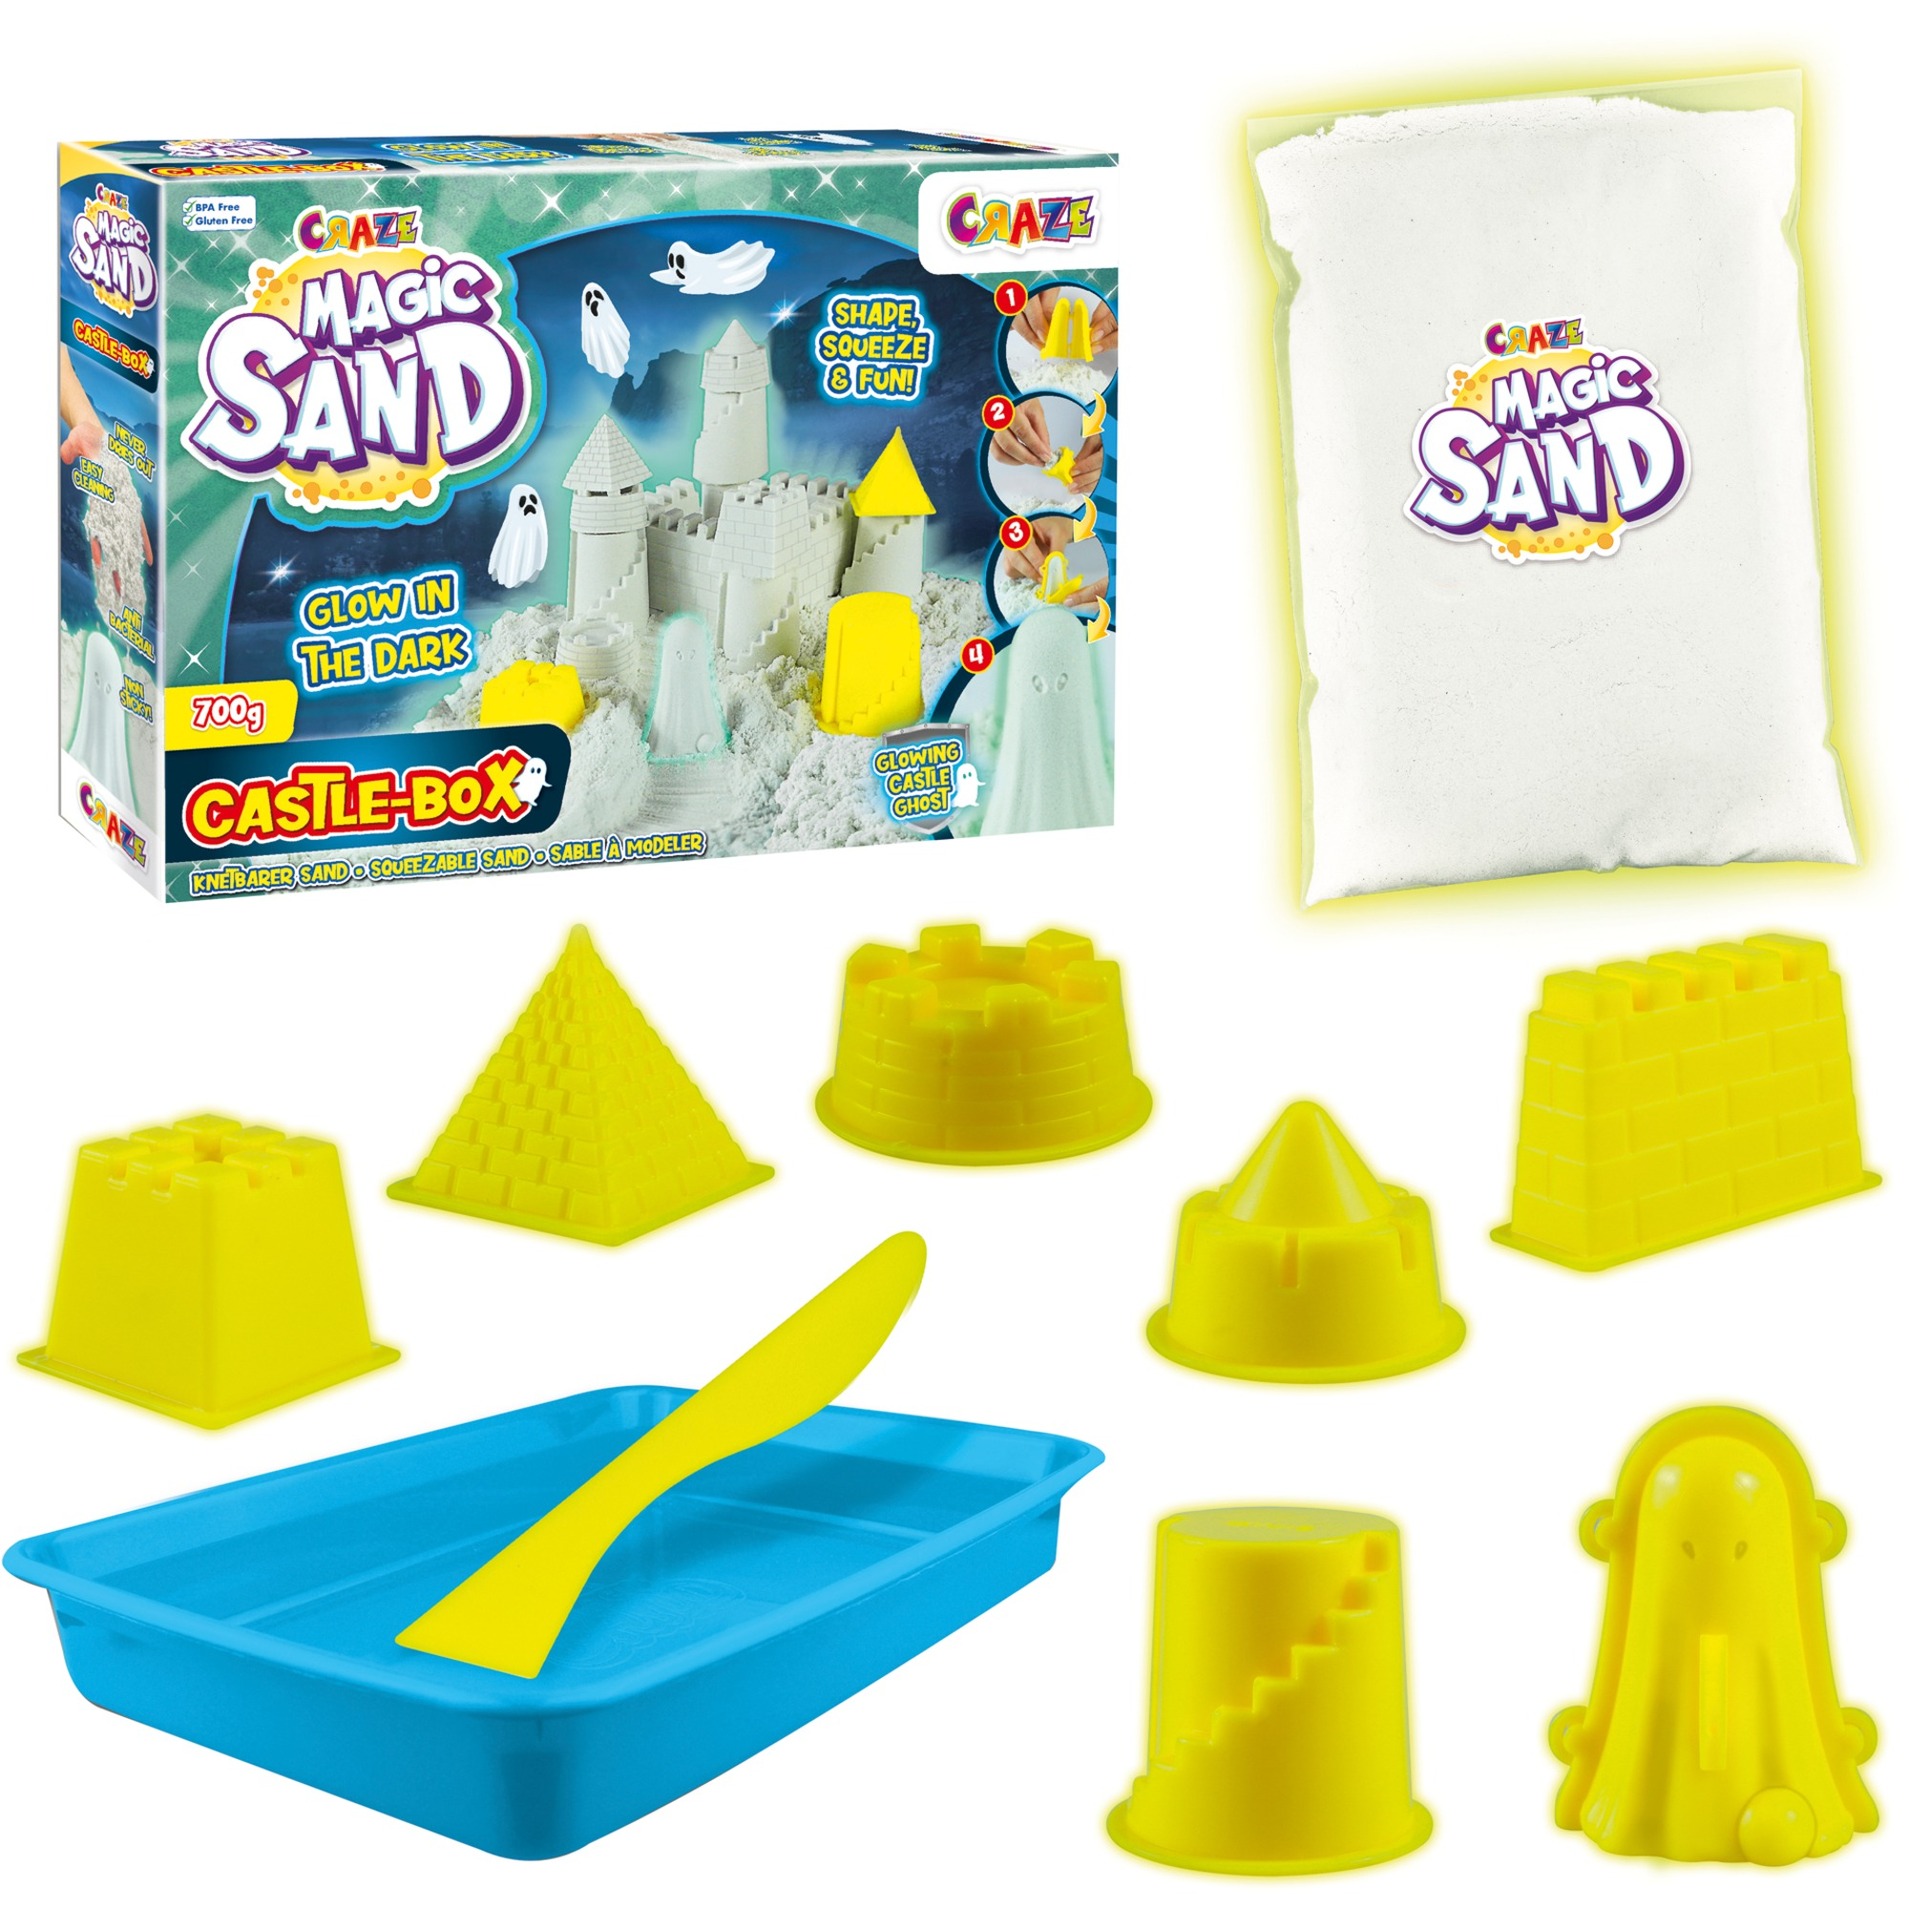 Image of Alternate - Magic Sand Castle Box, Spielsand online einkaufen bei Alternate